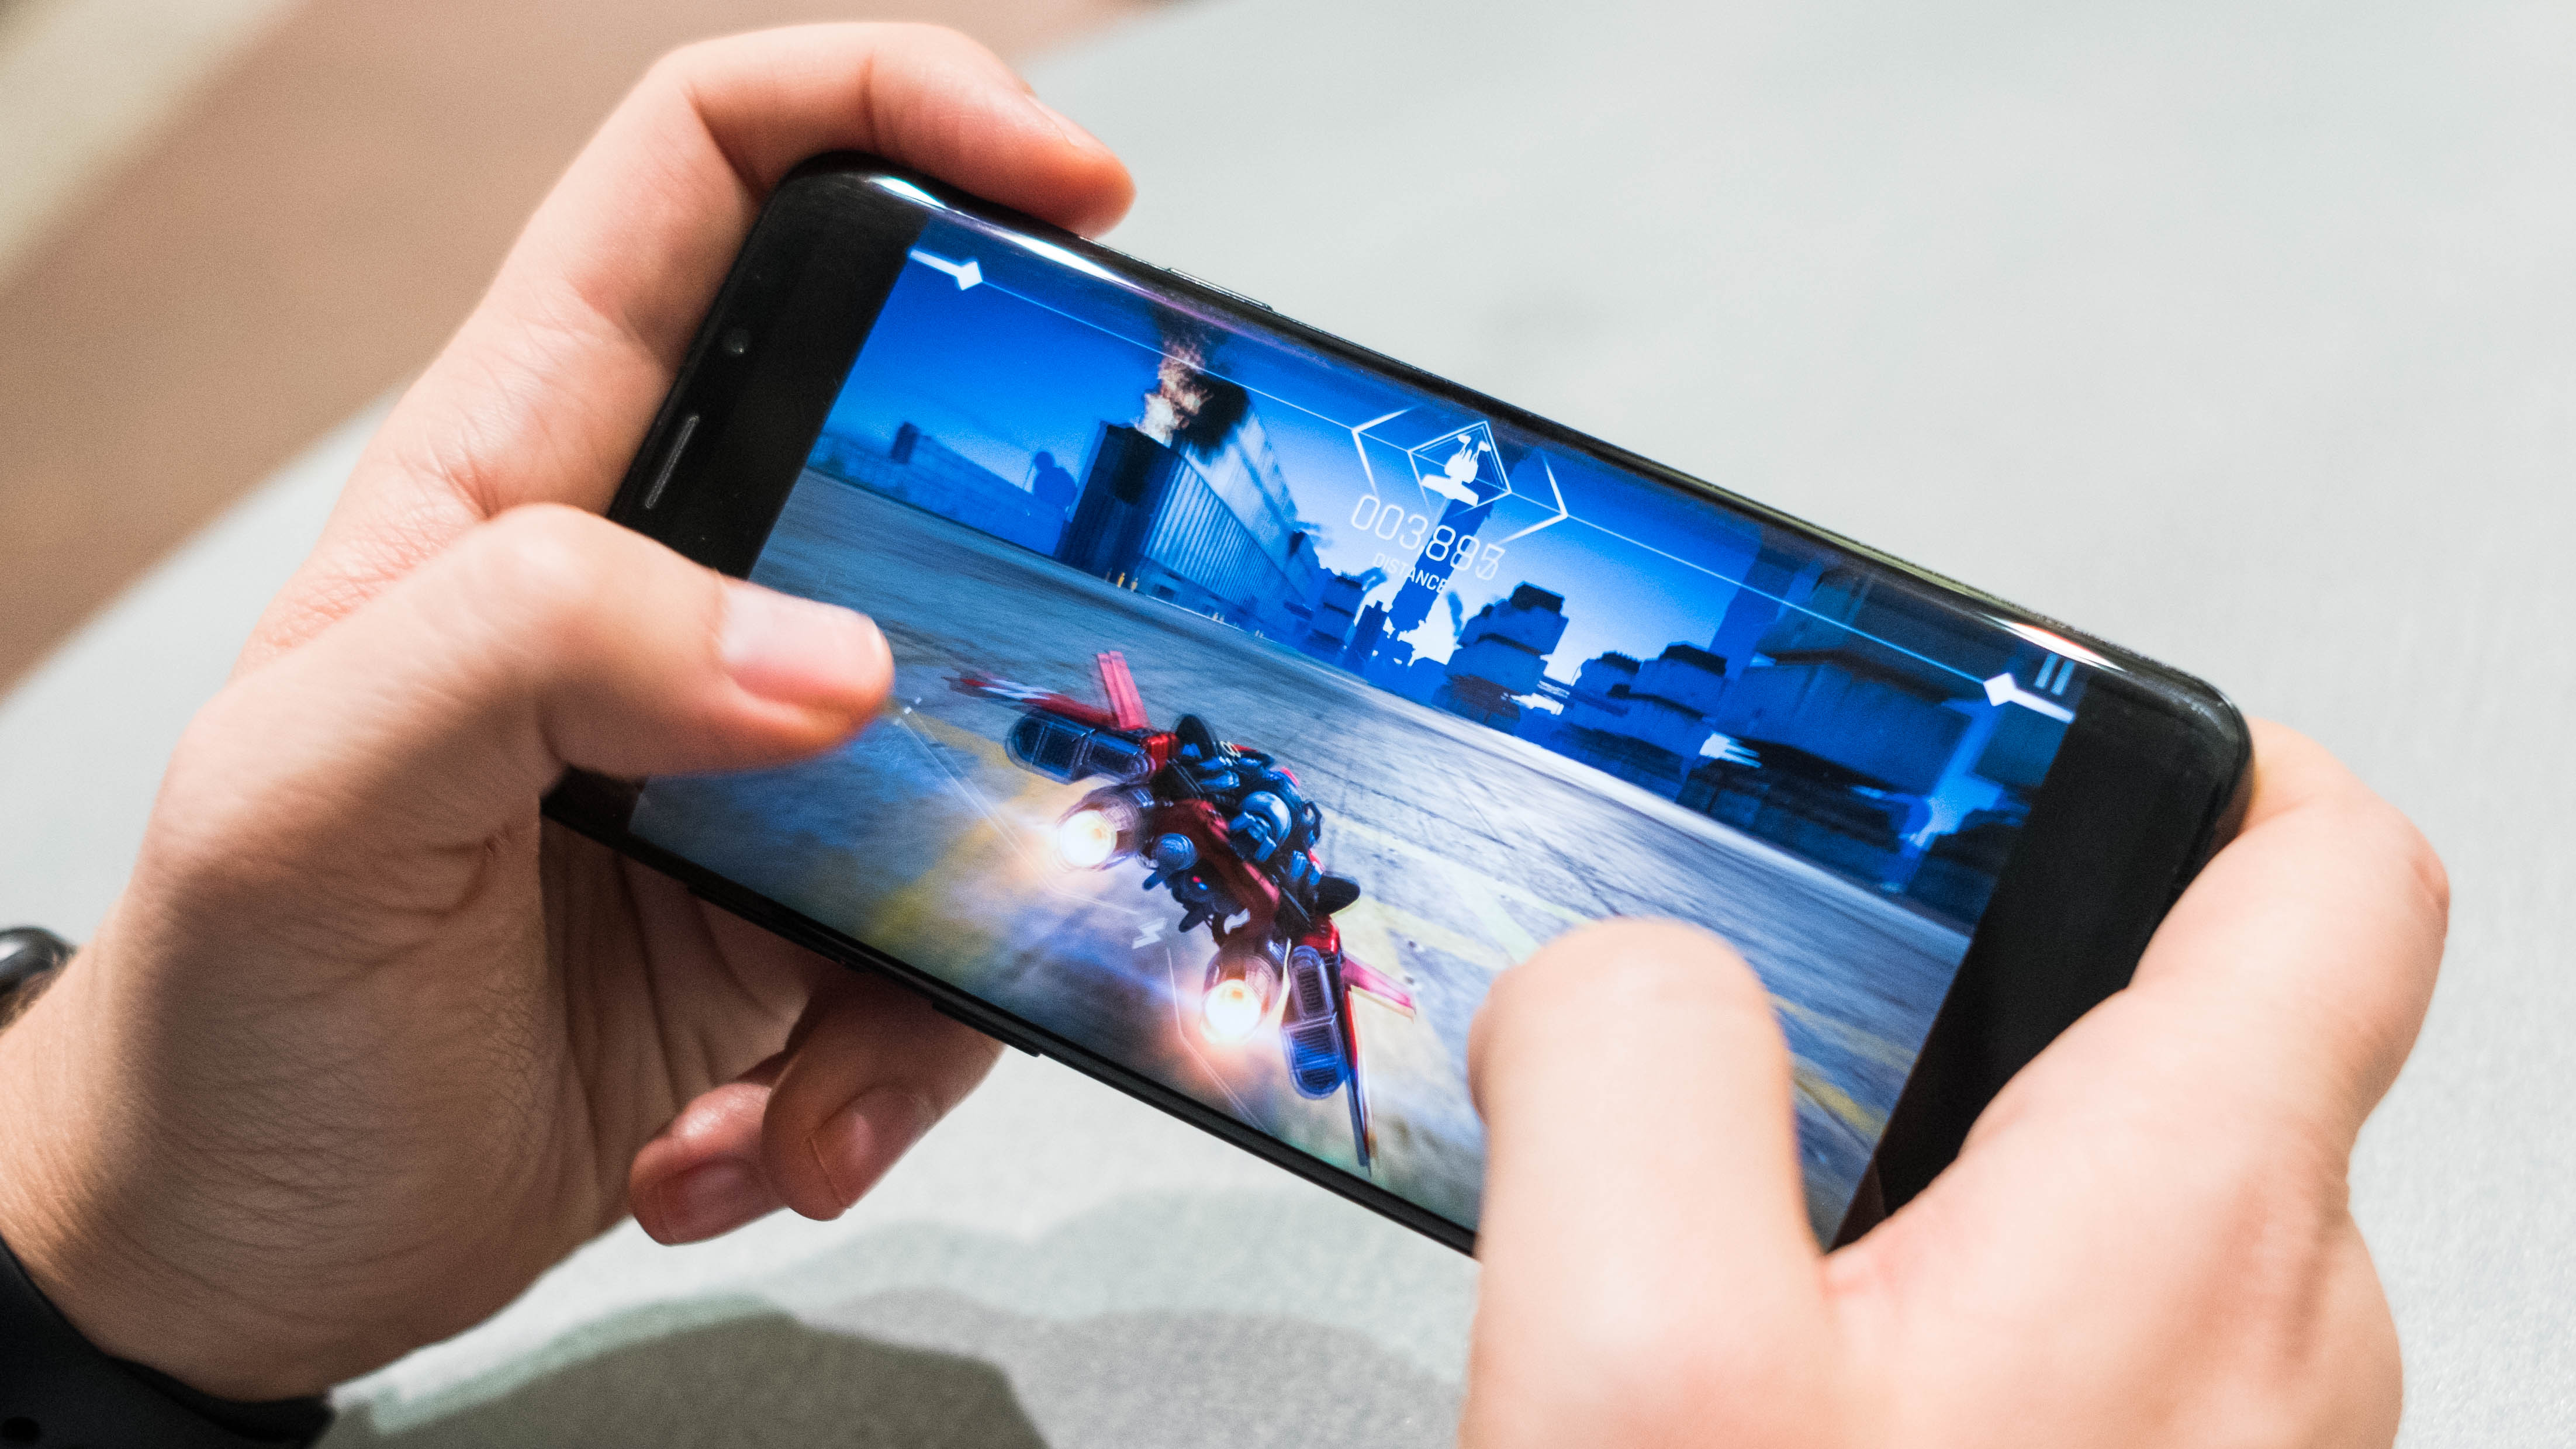 Мобильные игры на Android - изображение новостей на imei.info